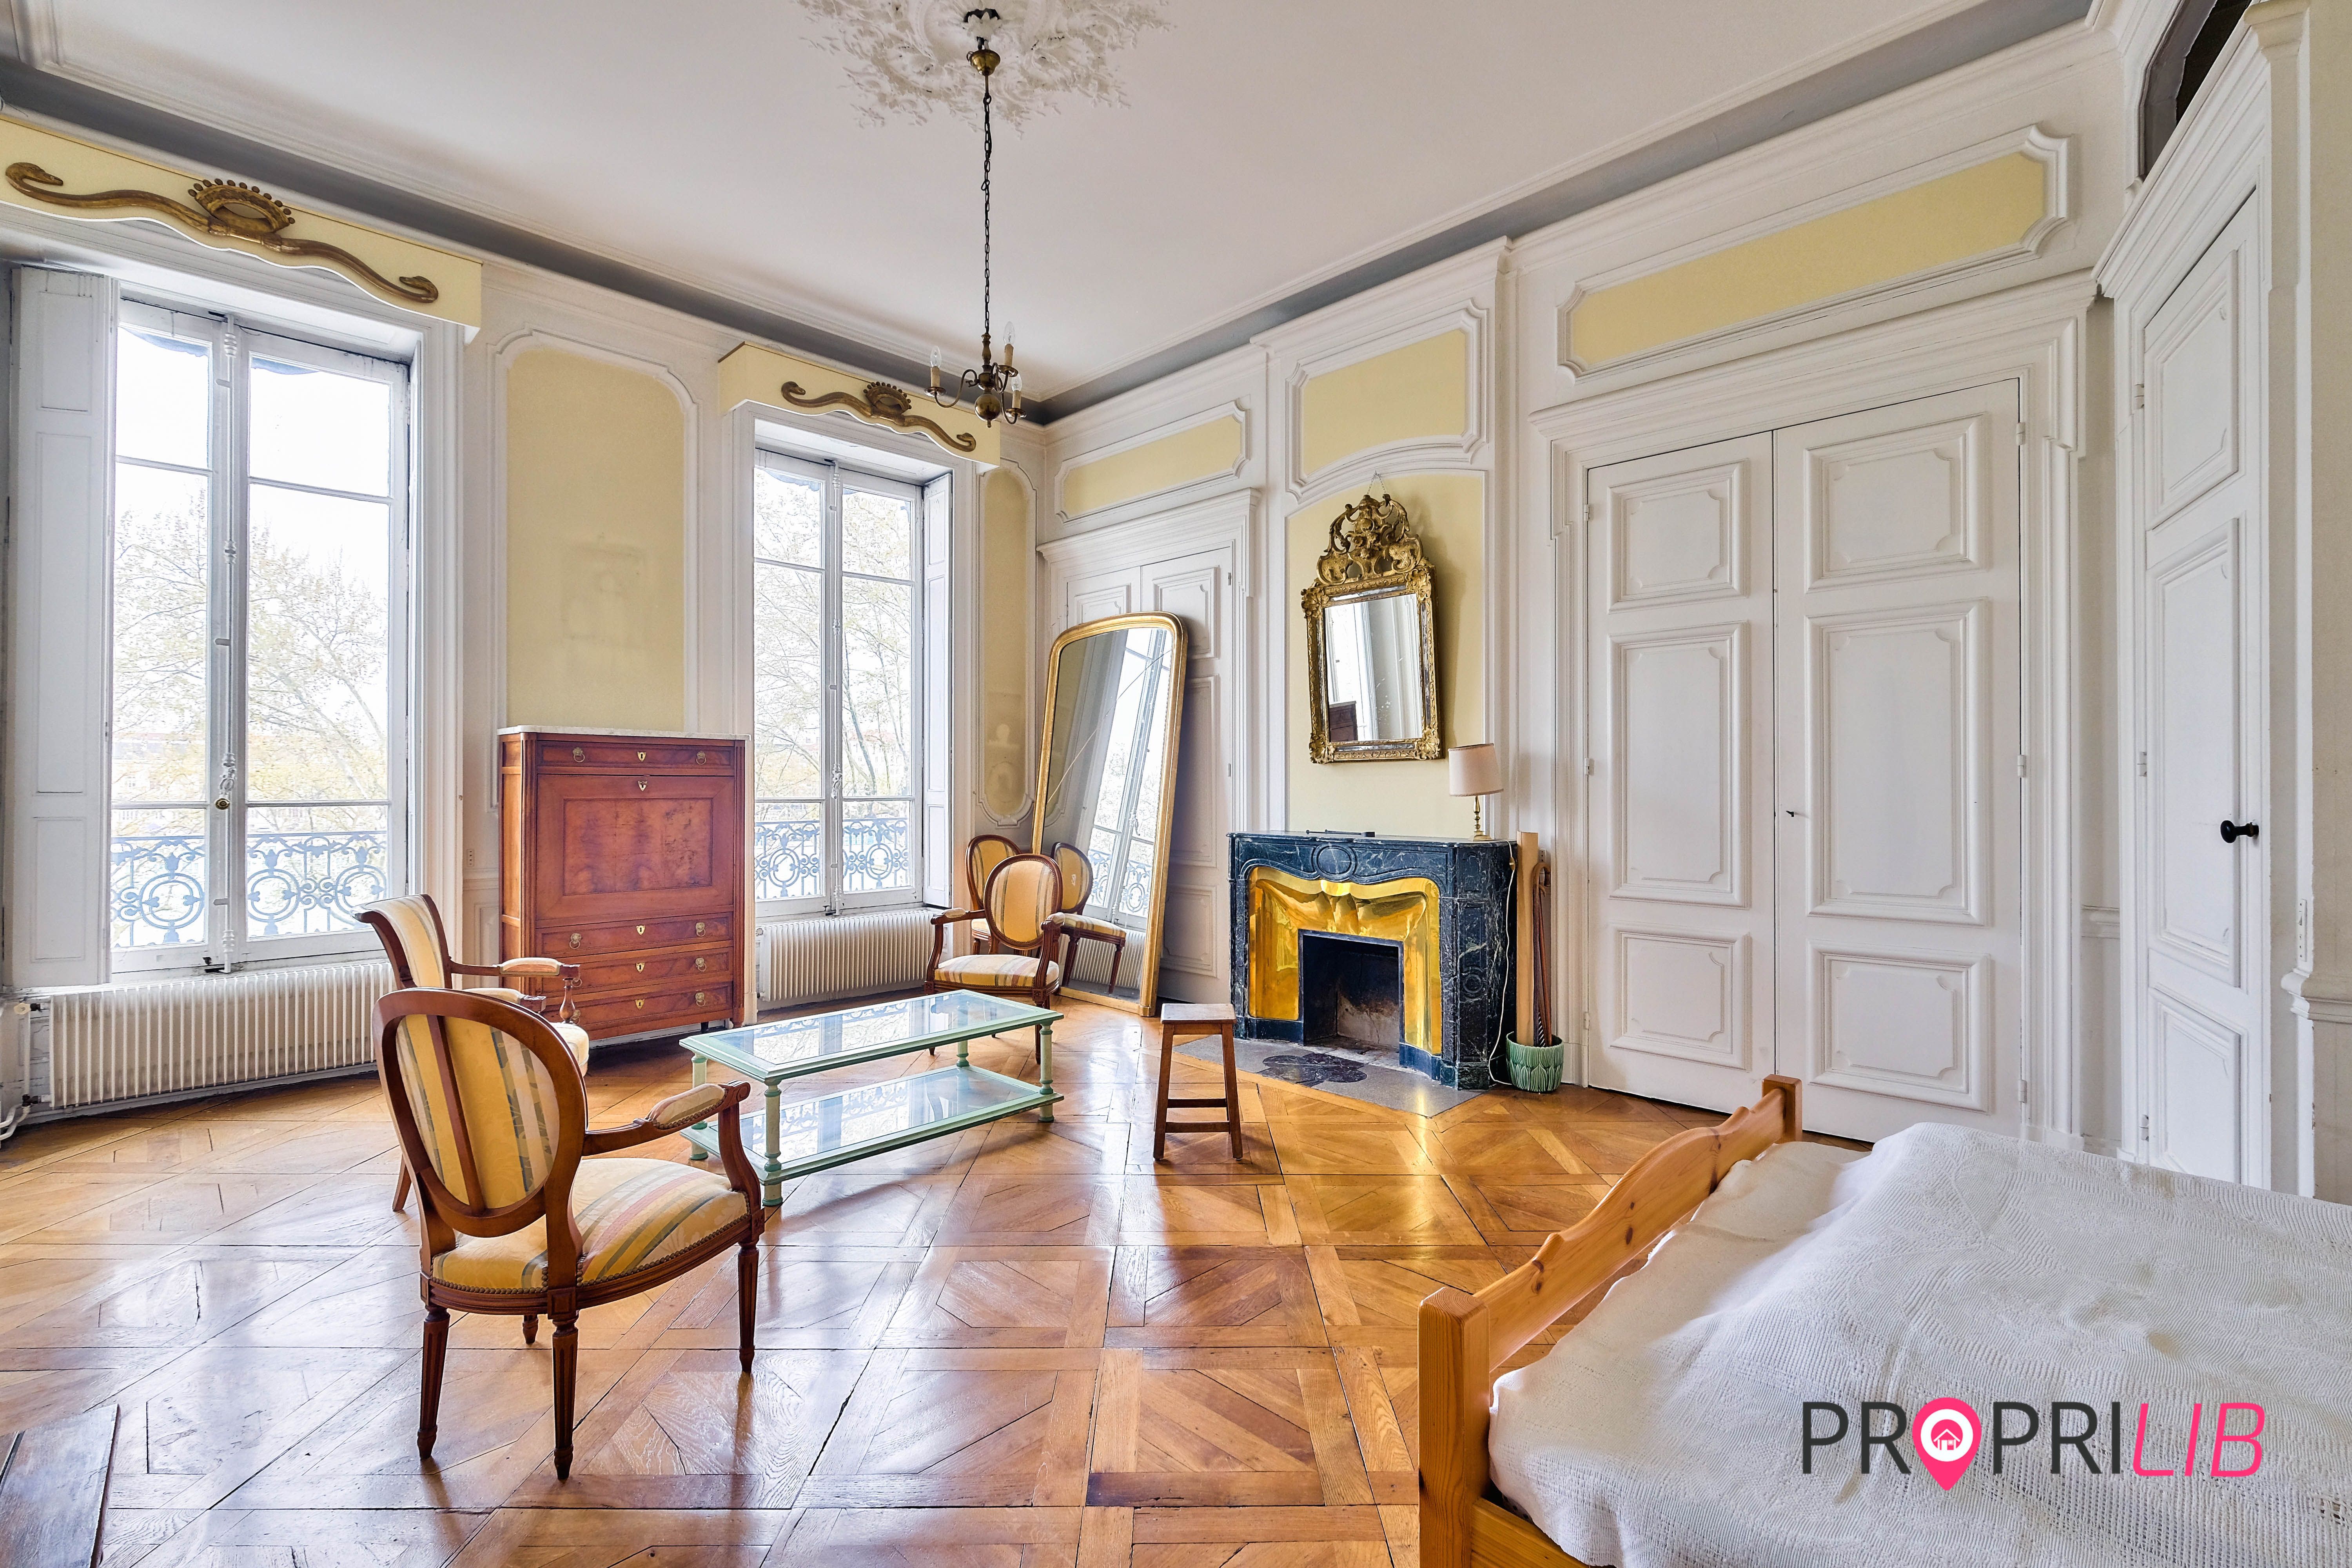 PropriLib l’agence immobilière en ligne au forfait vend cet appartement à Lyon 2ème